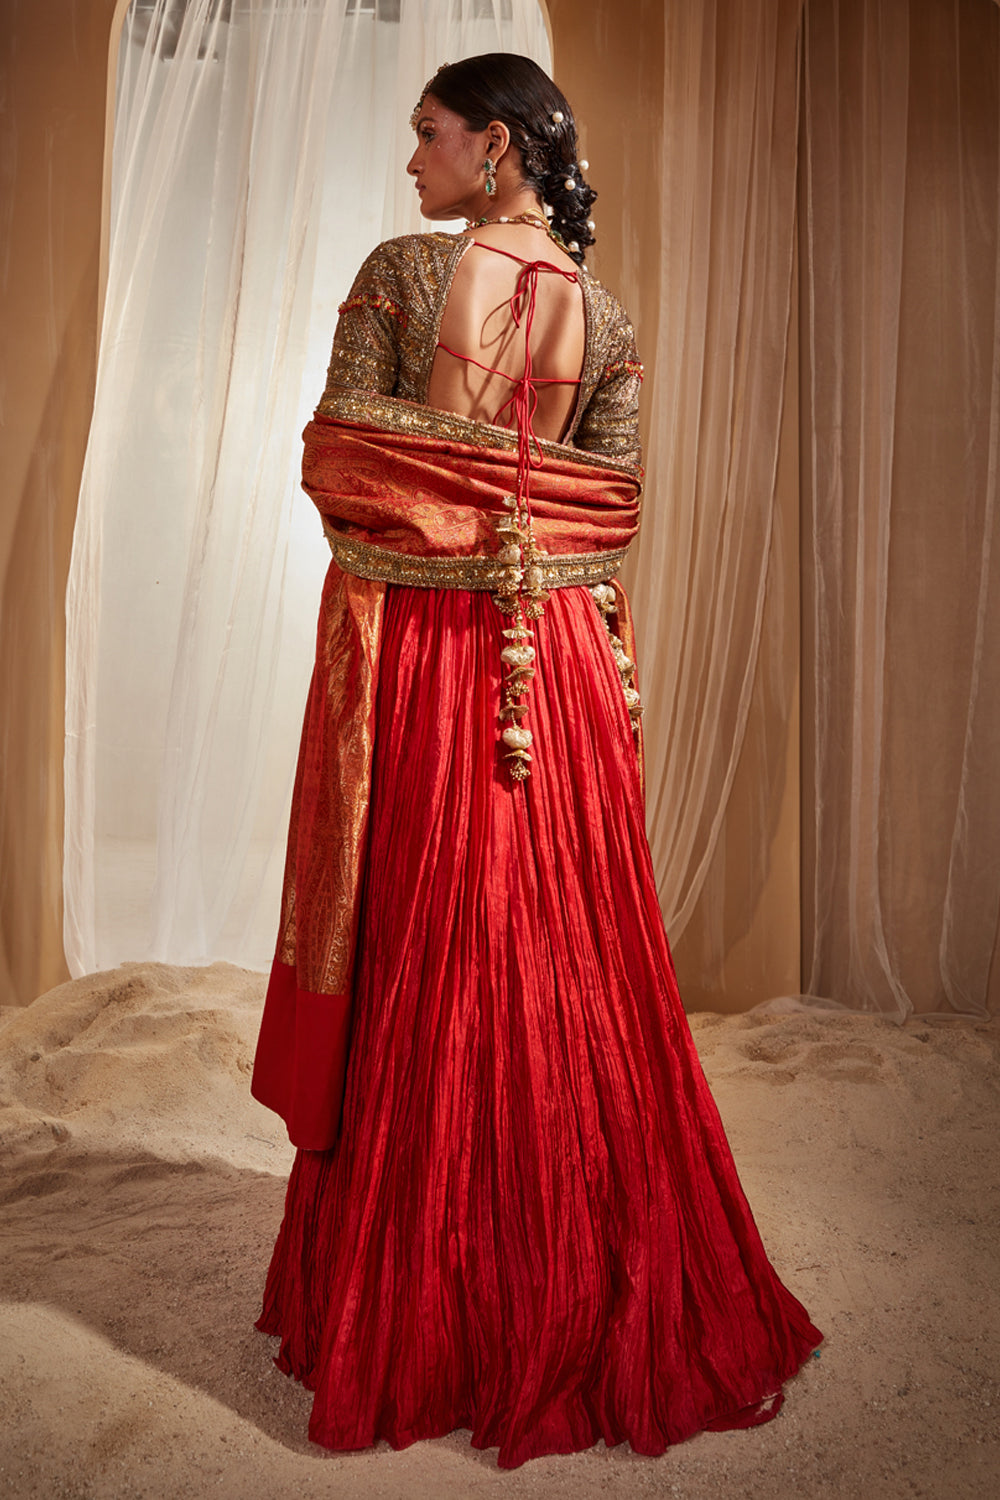 Buy Red And Gold Kanjivaram Zardozi Embroidered Lehenga Online - RI.Ritu  Kumar International Store View